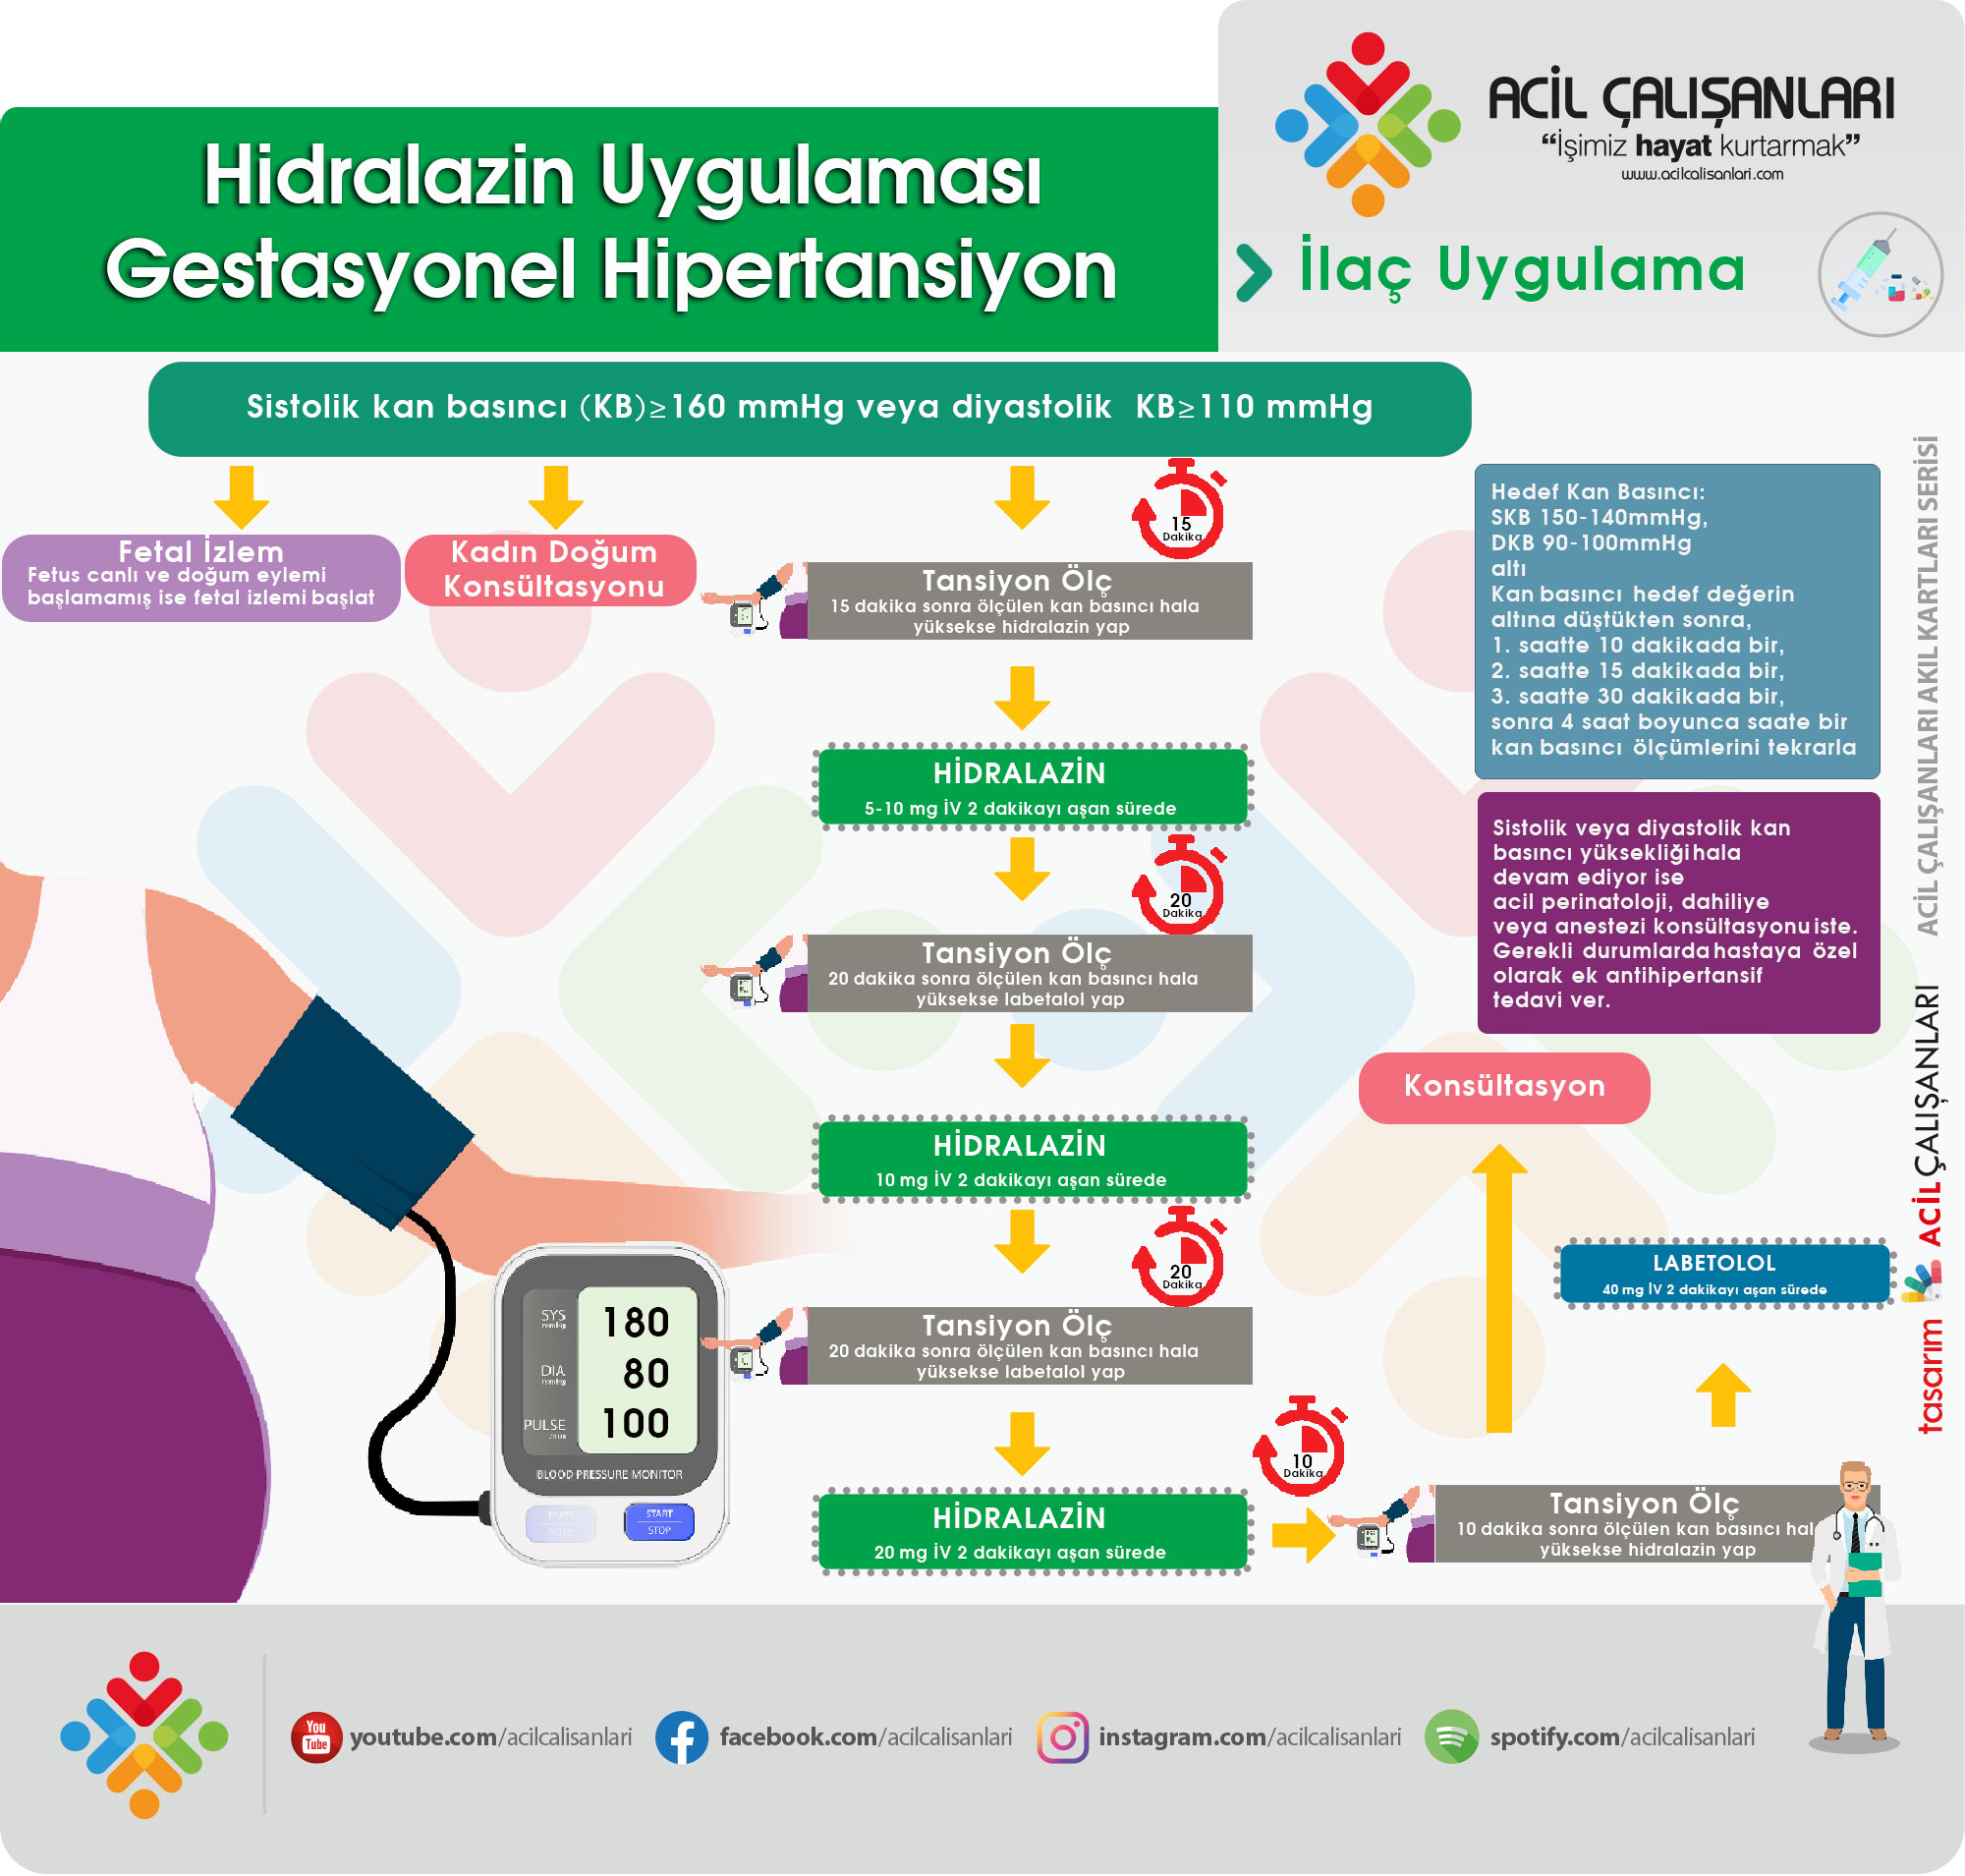 Türk Hipertansiyon ve Böbrek Hastalıkları Derneği